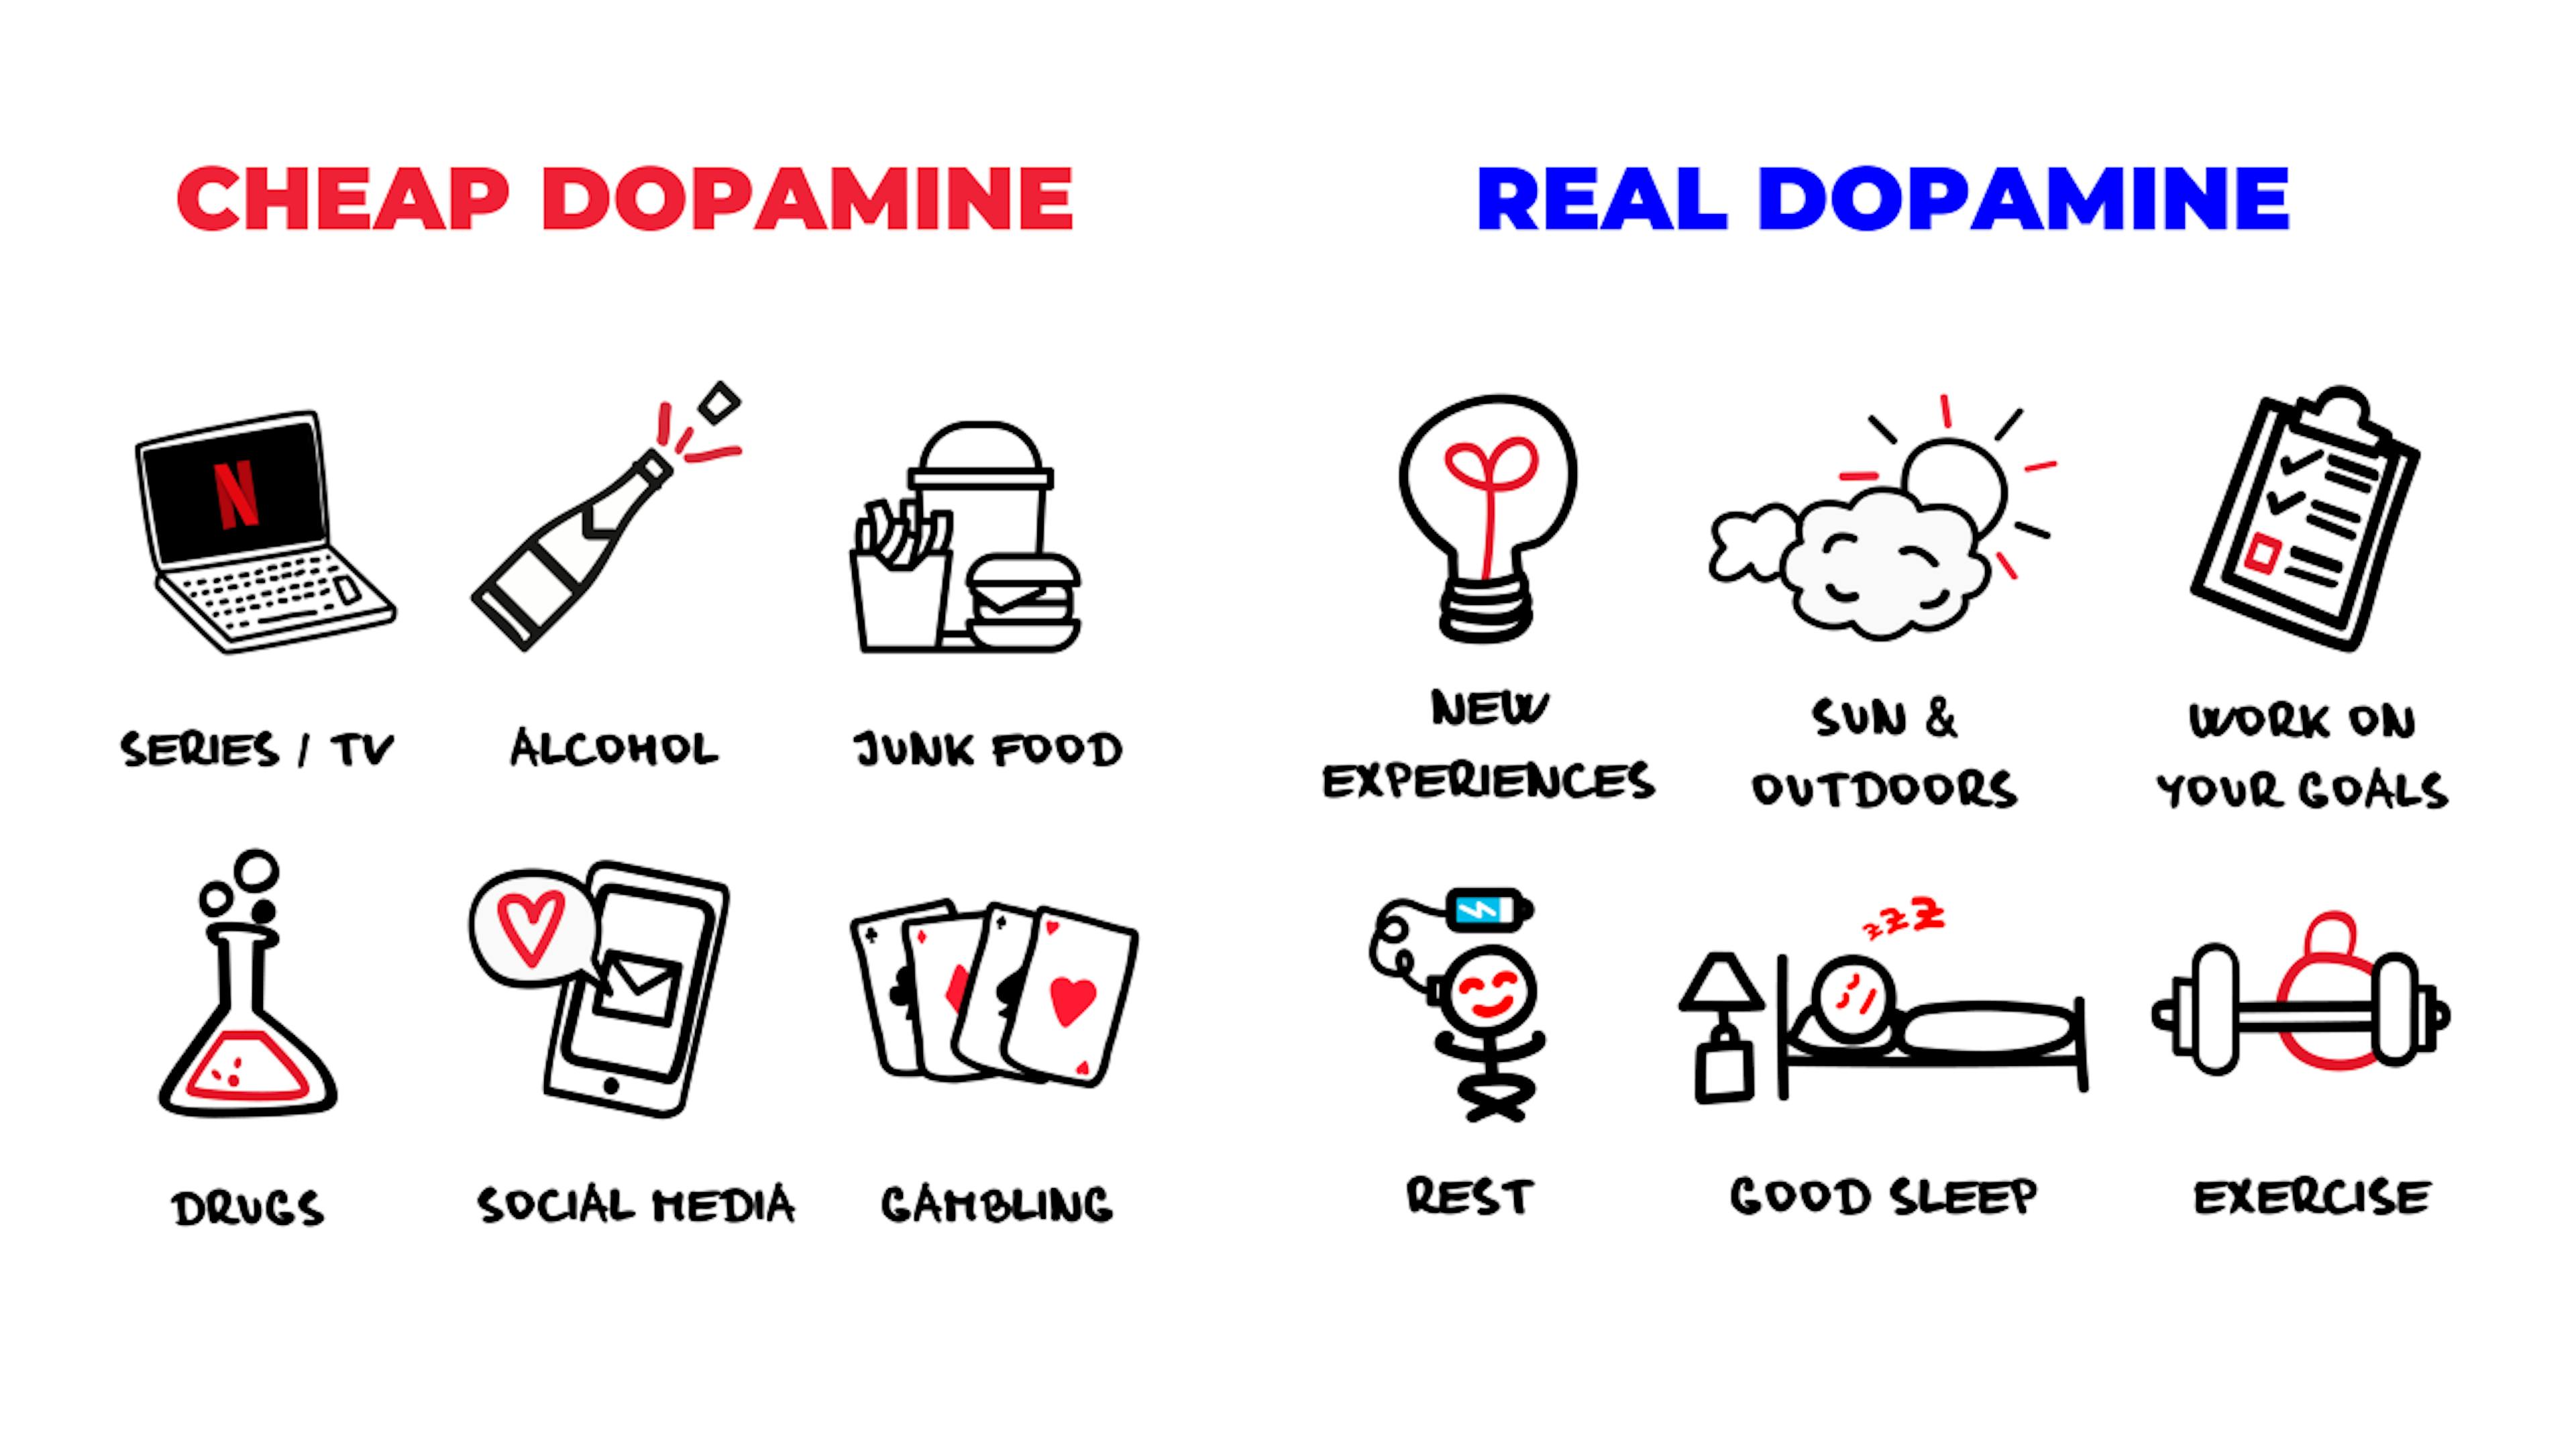 Dopamine bon marché ou réelle